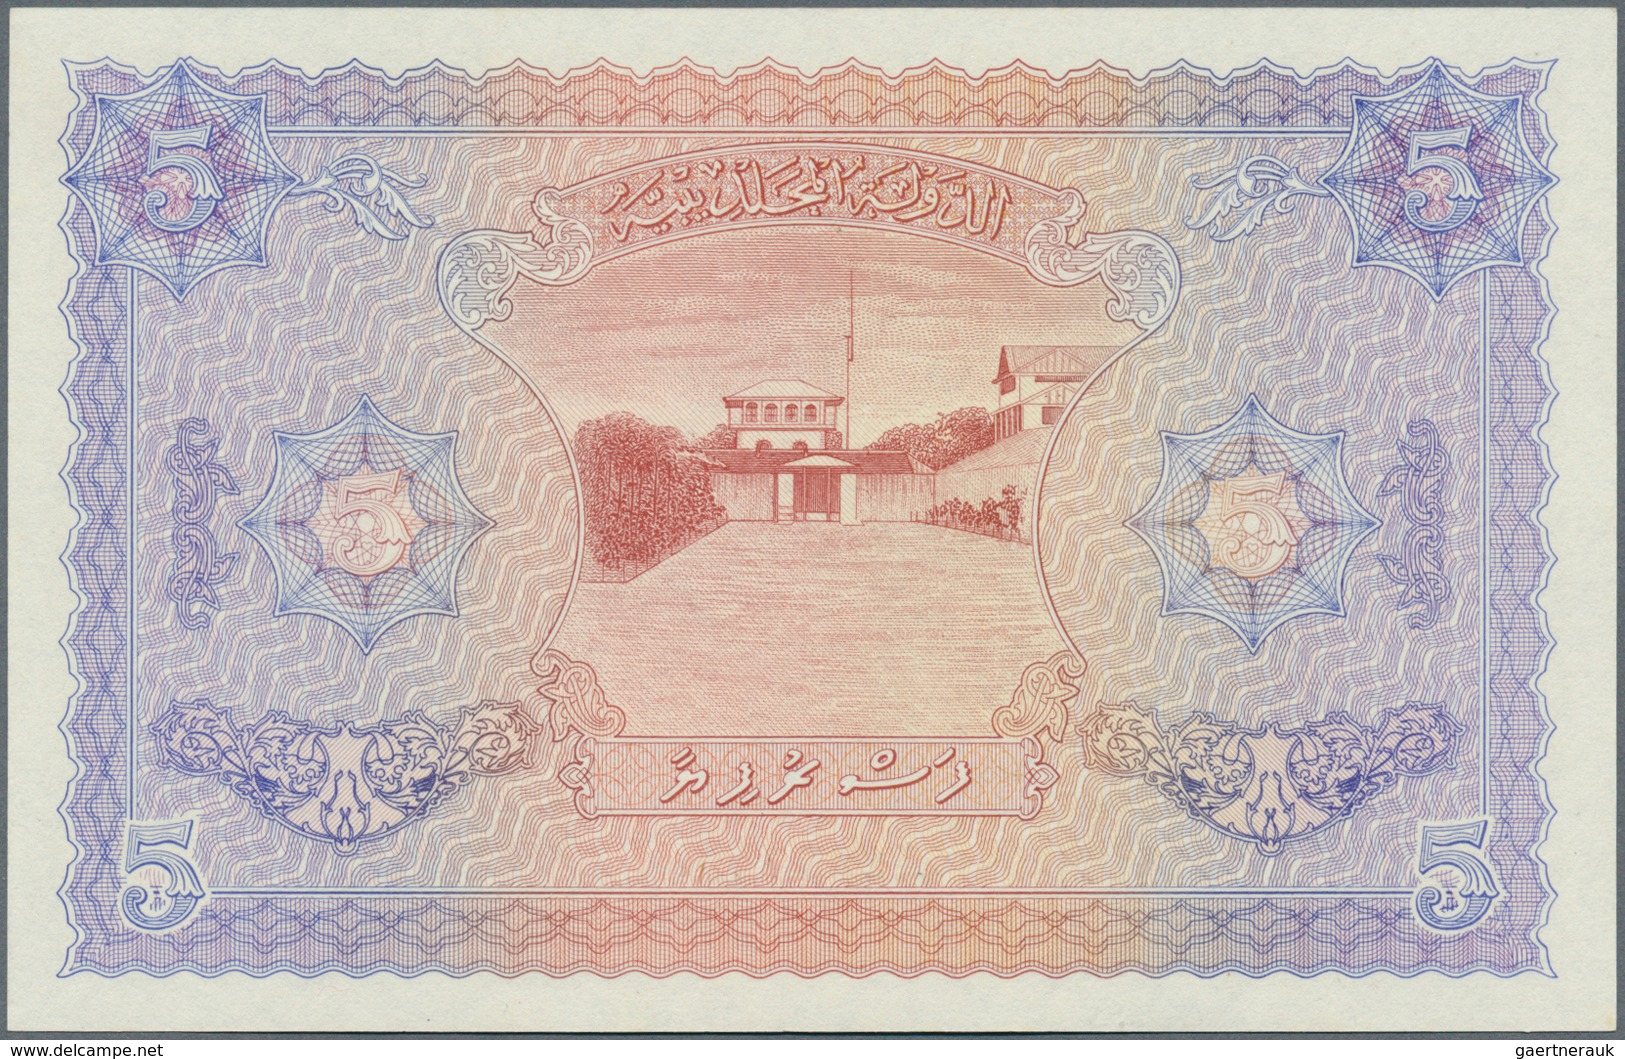 02000 Maldives / Malediven: 5 Rupees 1947 P. 4a In Condition: UNC. - Maldivas